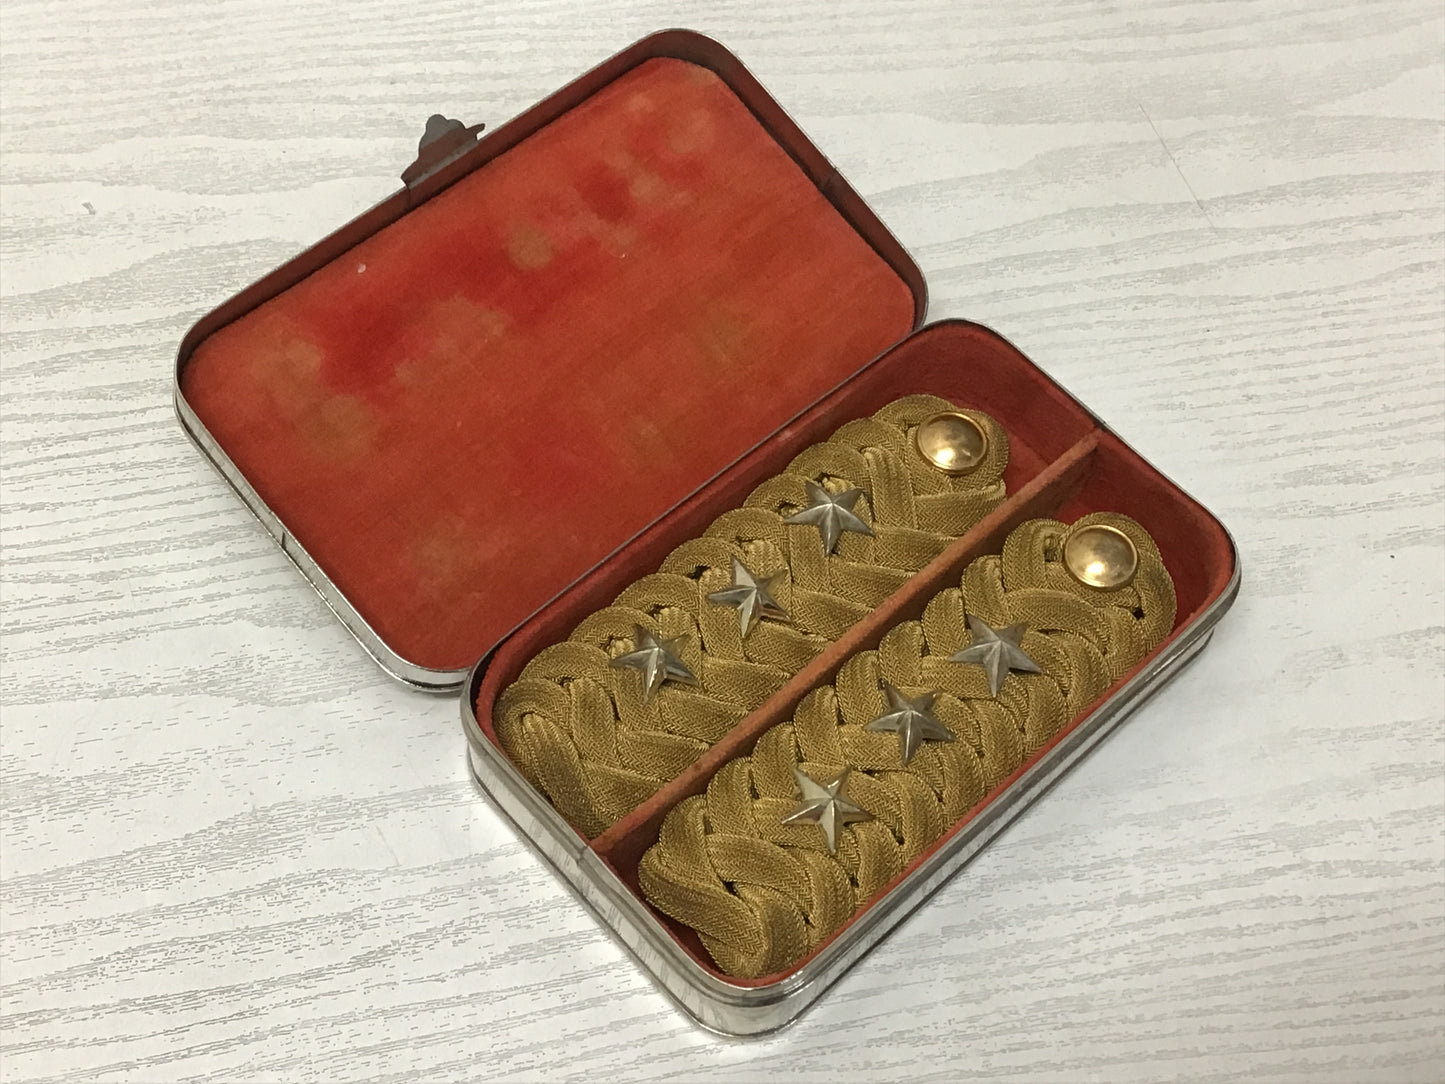 Y1893 Imperial Japan Army Epaulette epaulet shoulder strap box Japan WW2 vintage